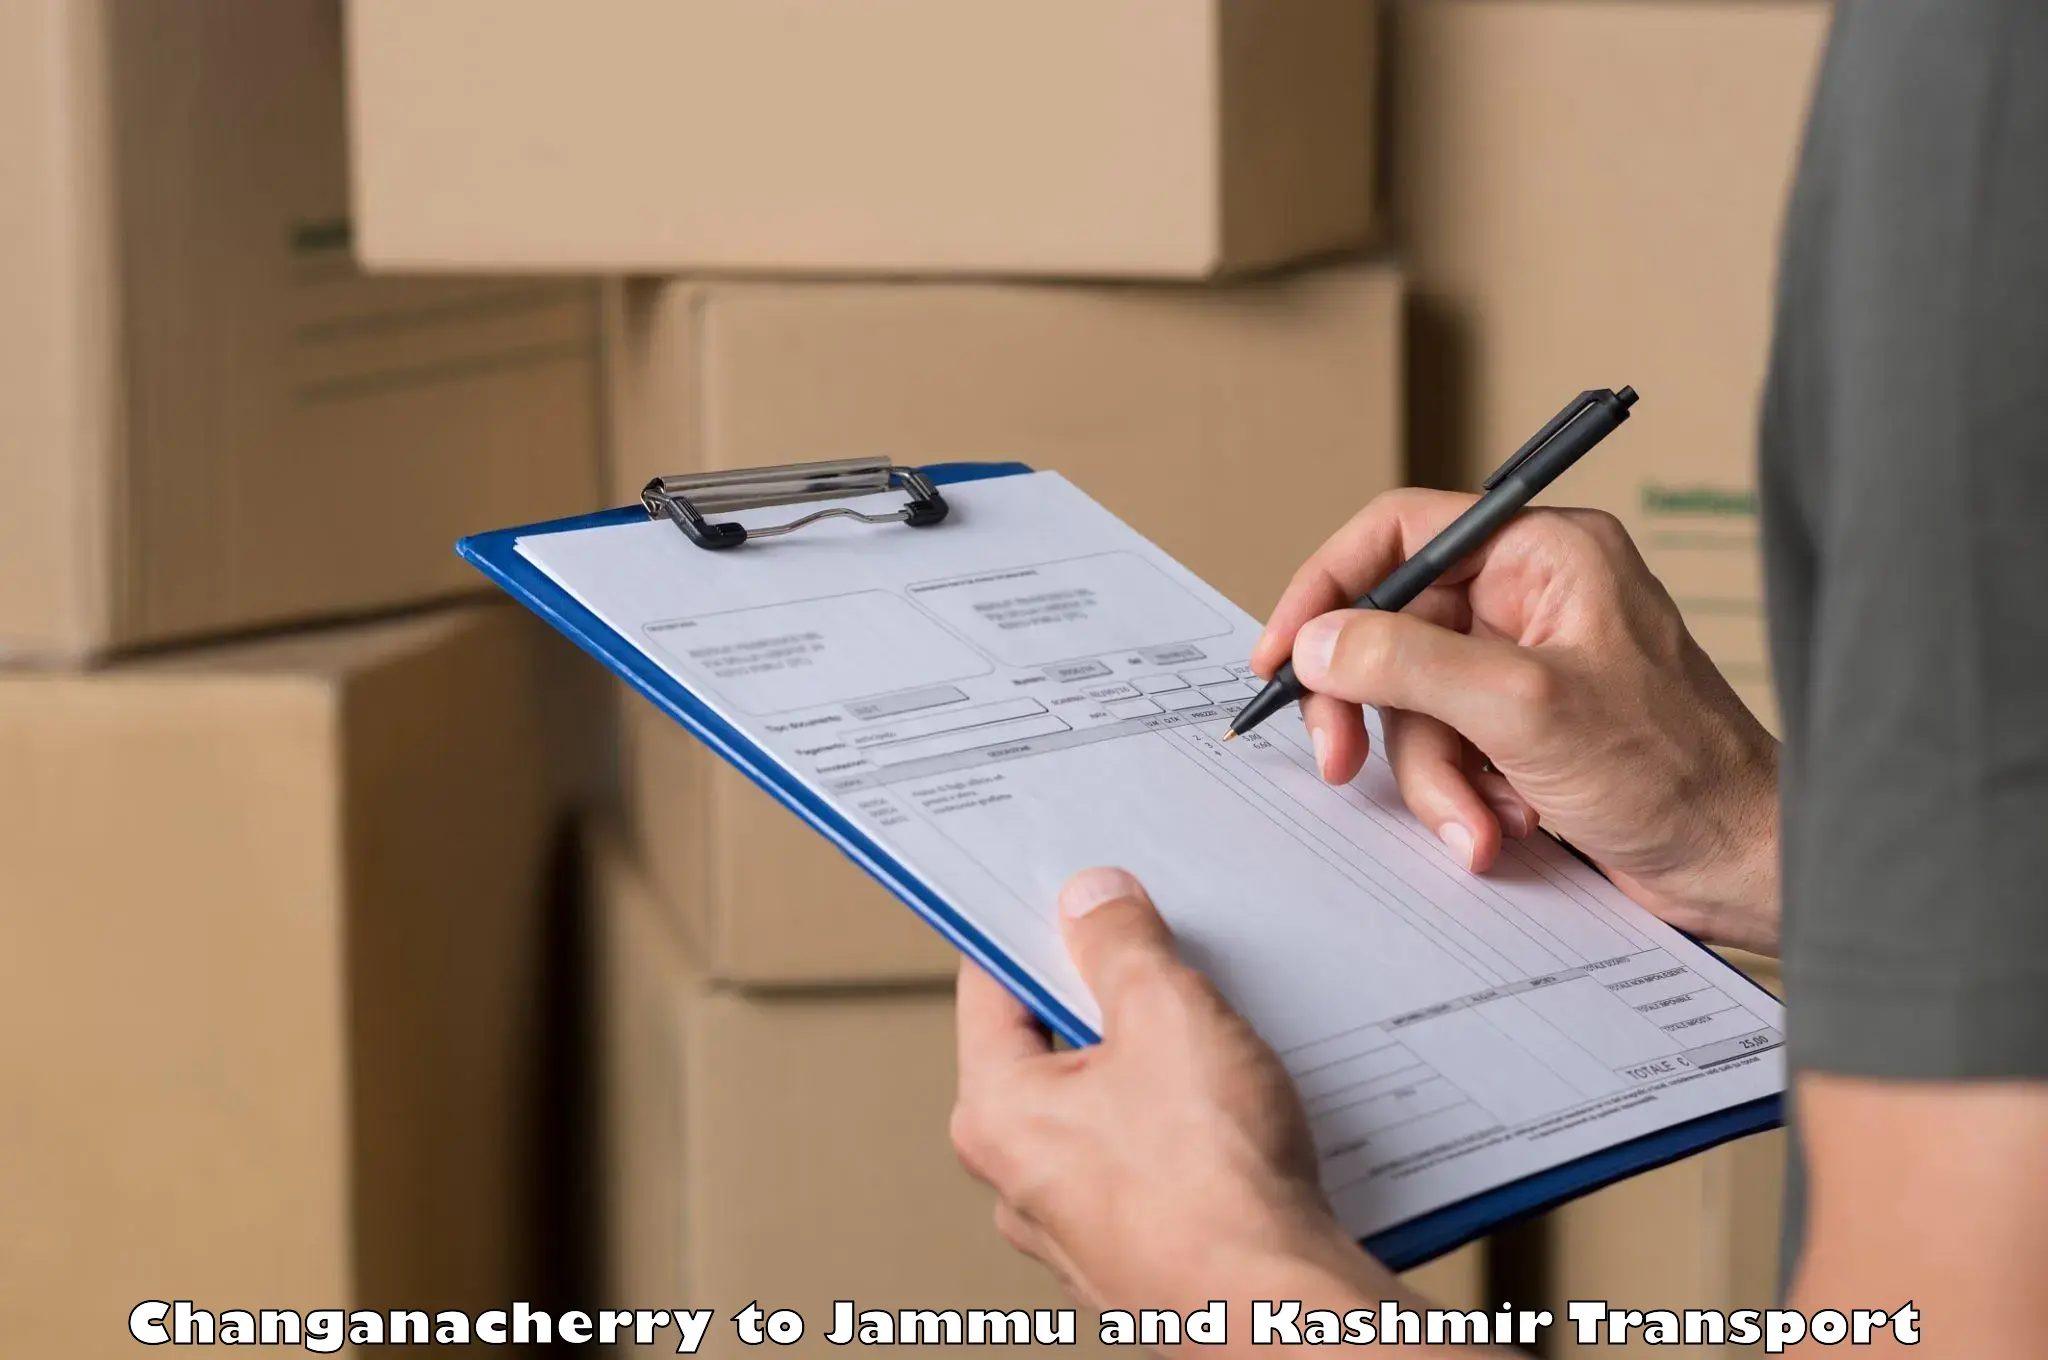 Shipping partner Changanacherry to IIT Jammu